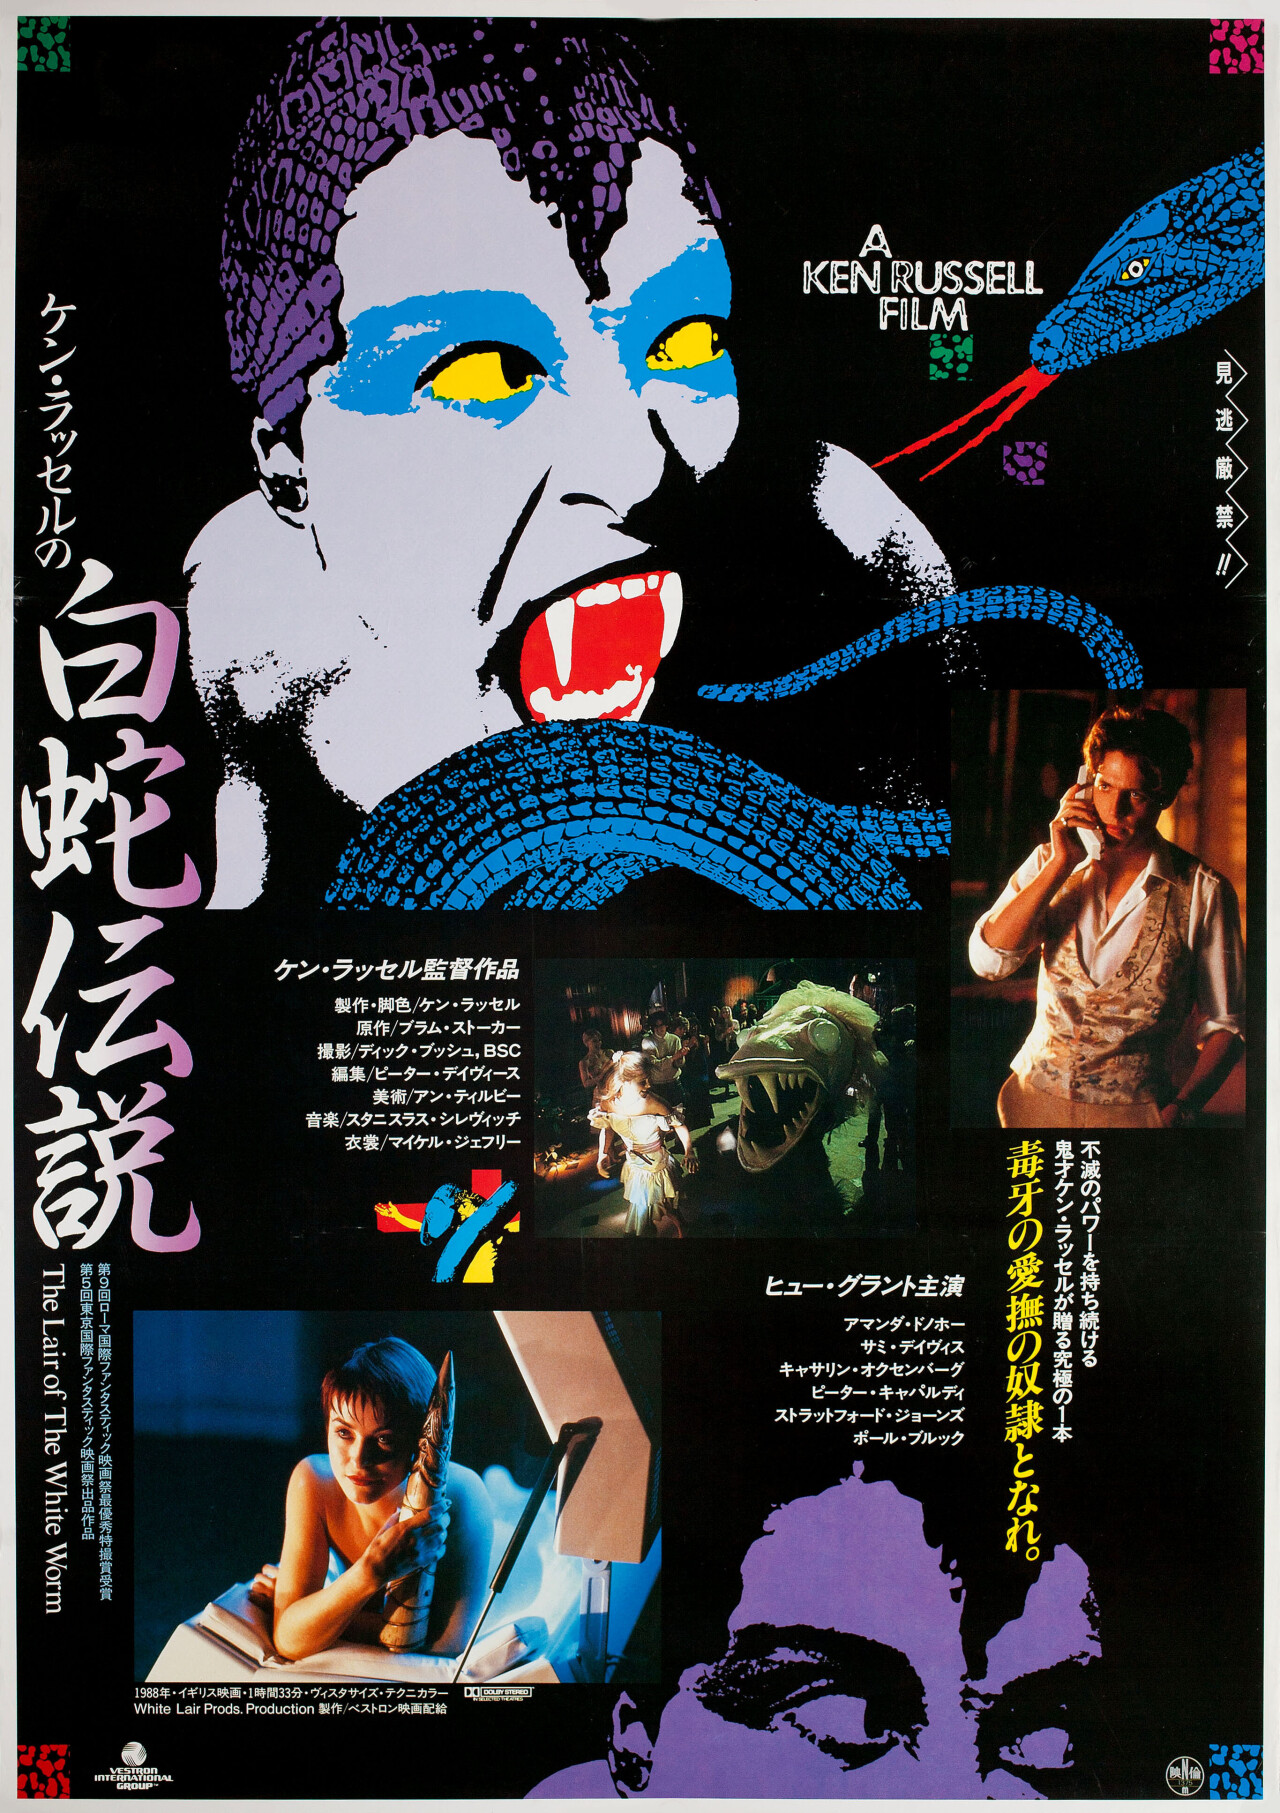 Логово Белого Червя (The Lair of the White Worm, 1988), режиссёр Кен Рассел, японский постер к фильму (ужасы, 1988 год)